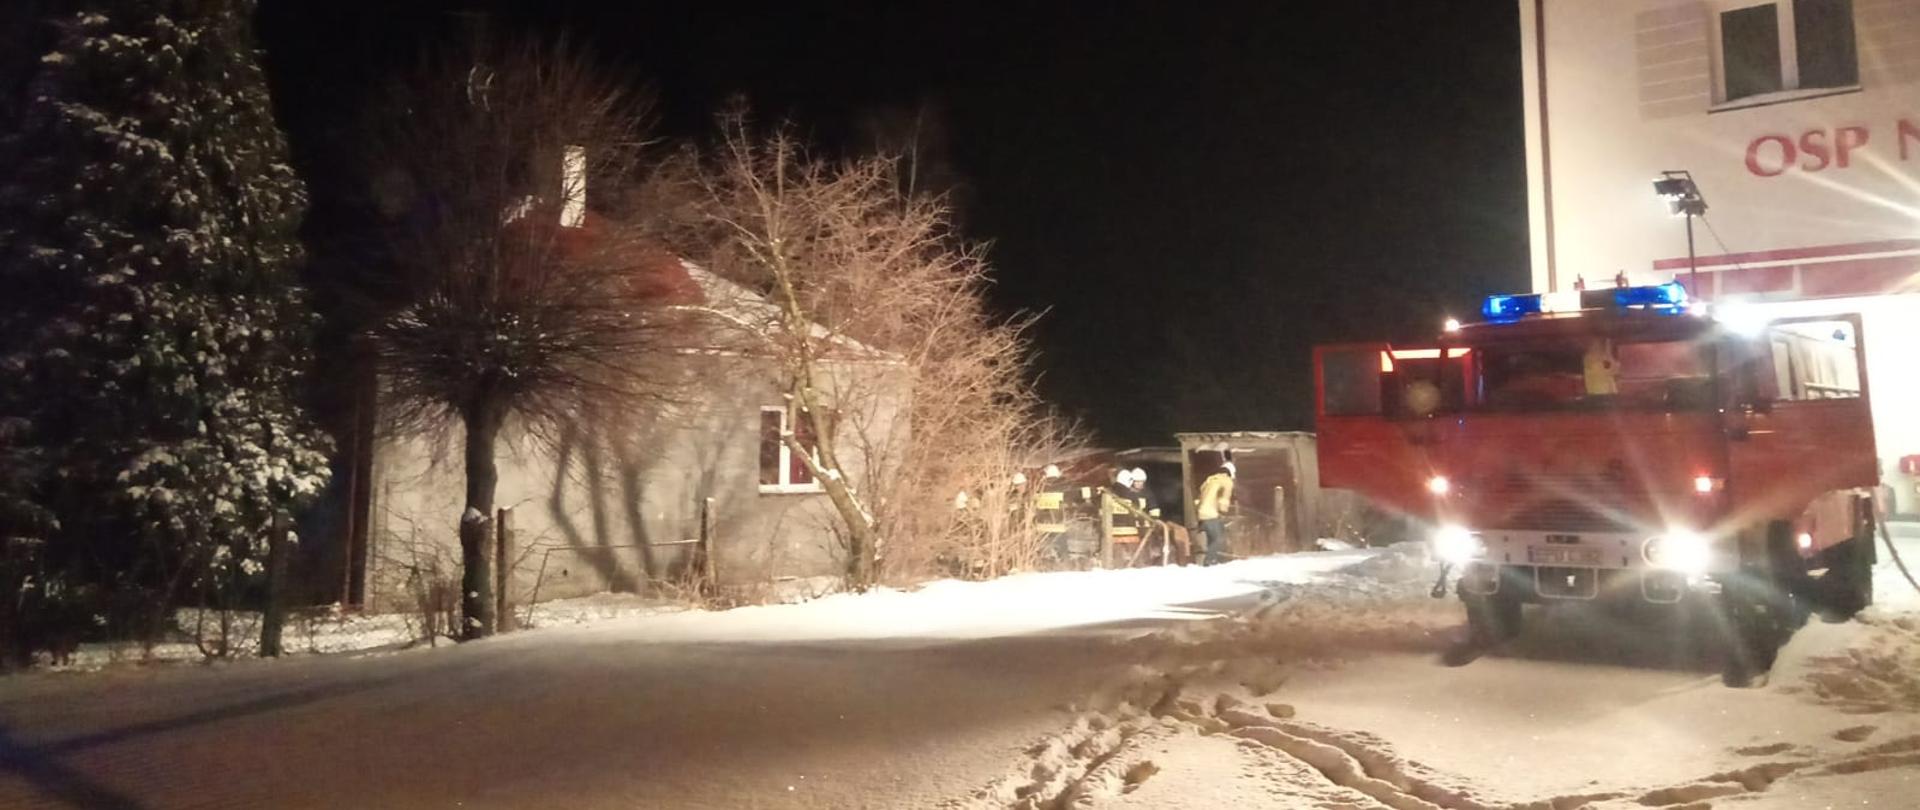 Pożar kotłowni w budynku mieszkalnym w miejscowości Niewiesz-Kolonia gm. Poddębice. 